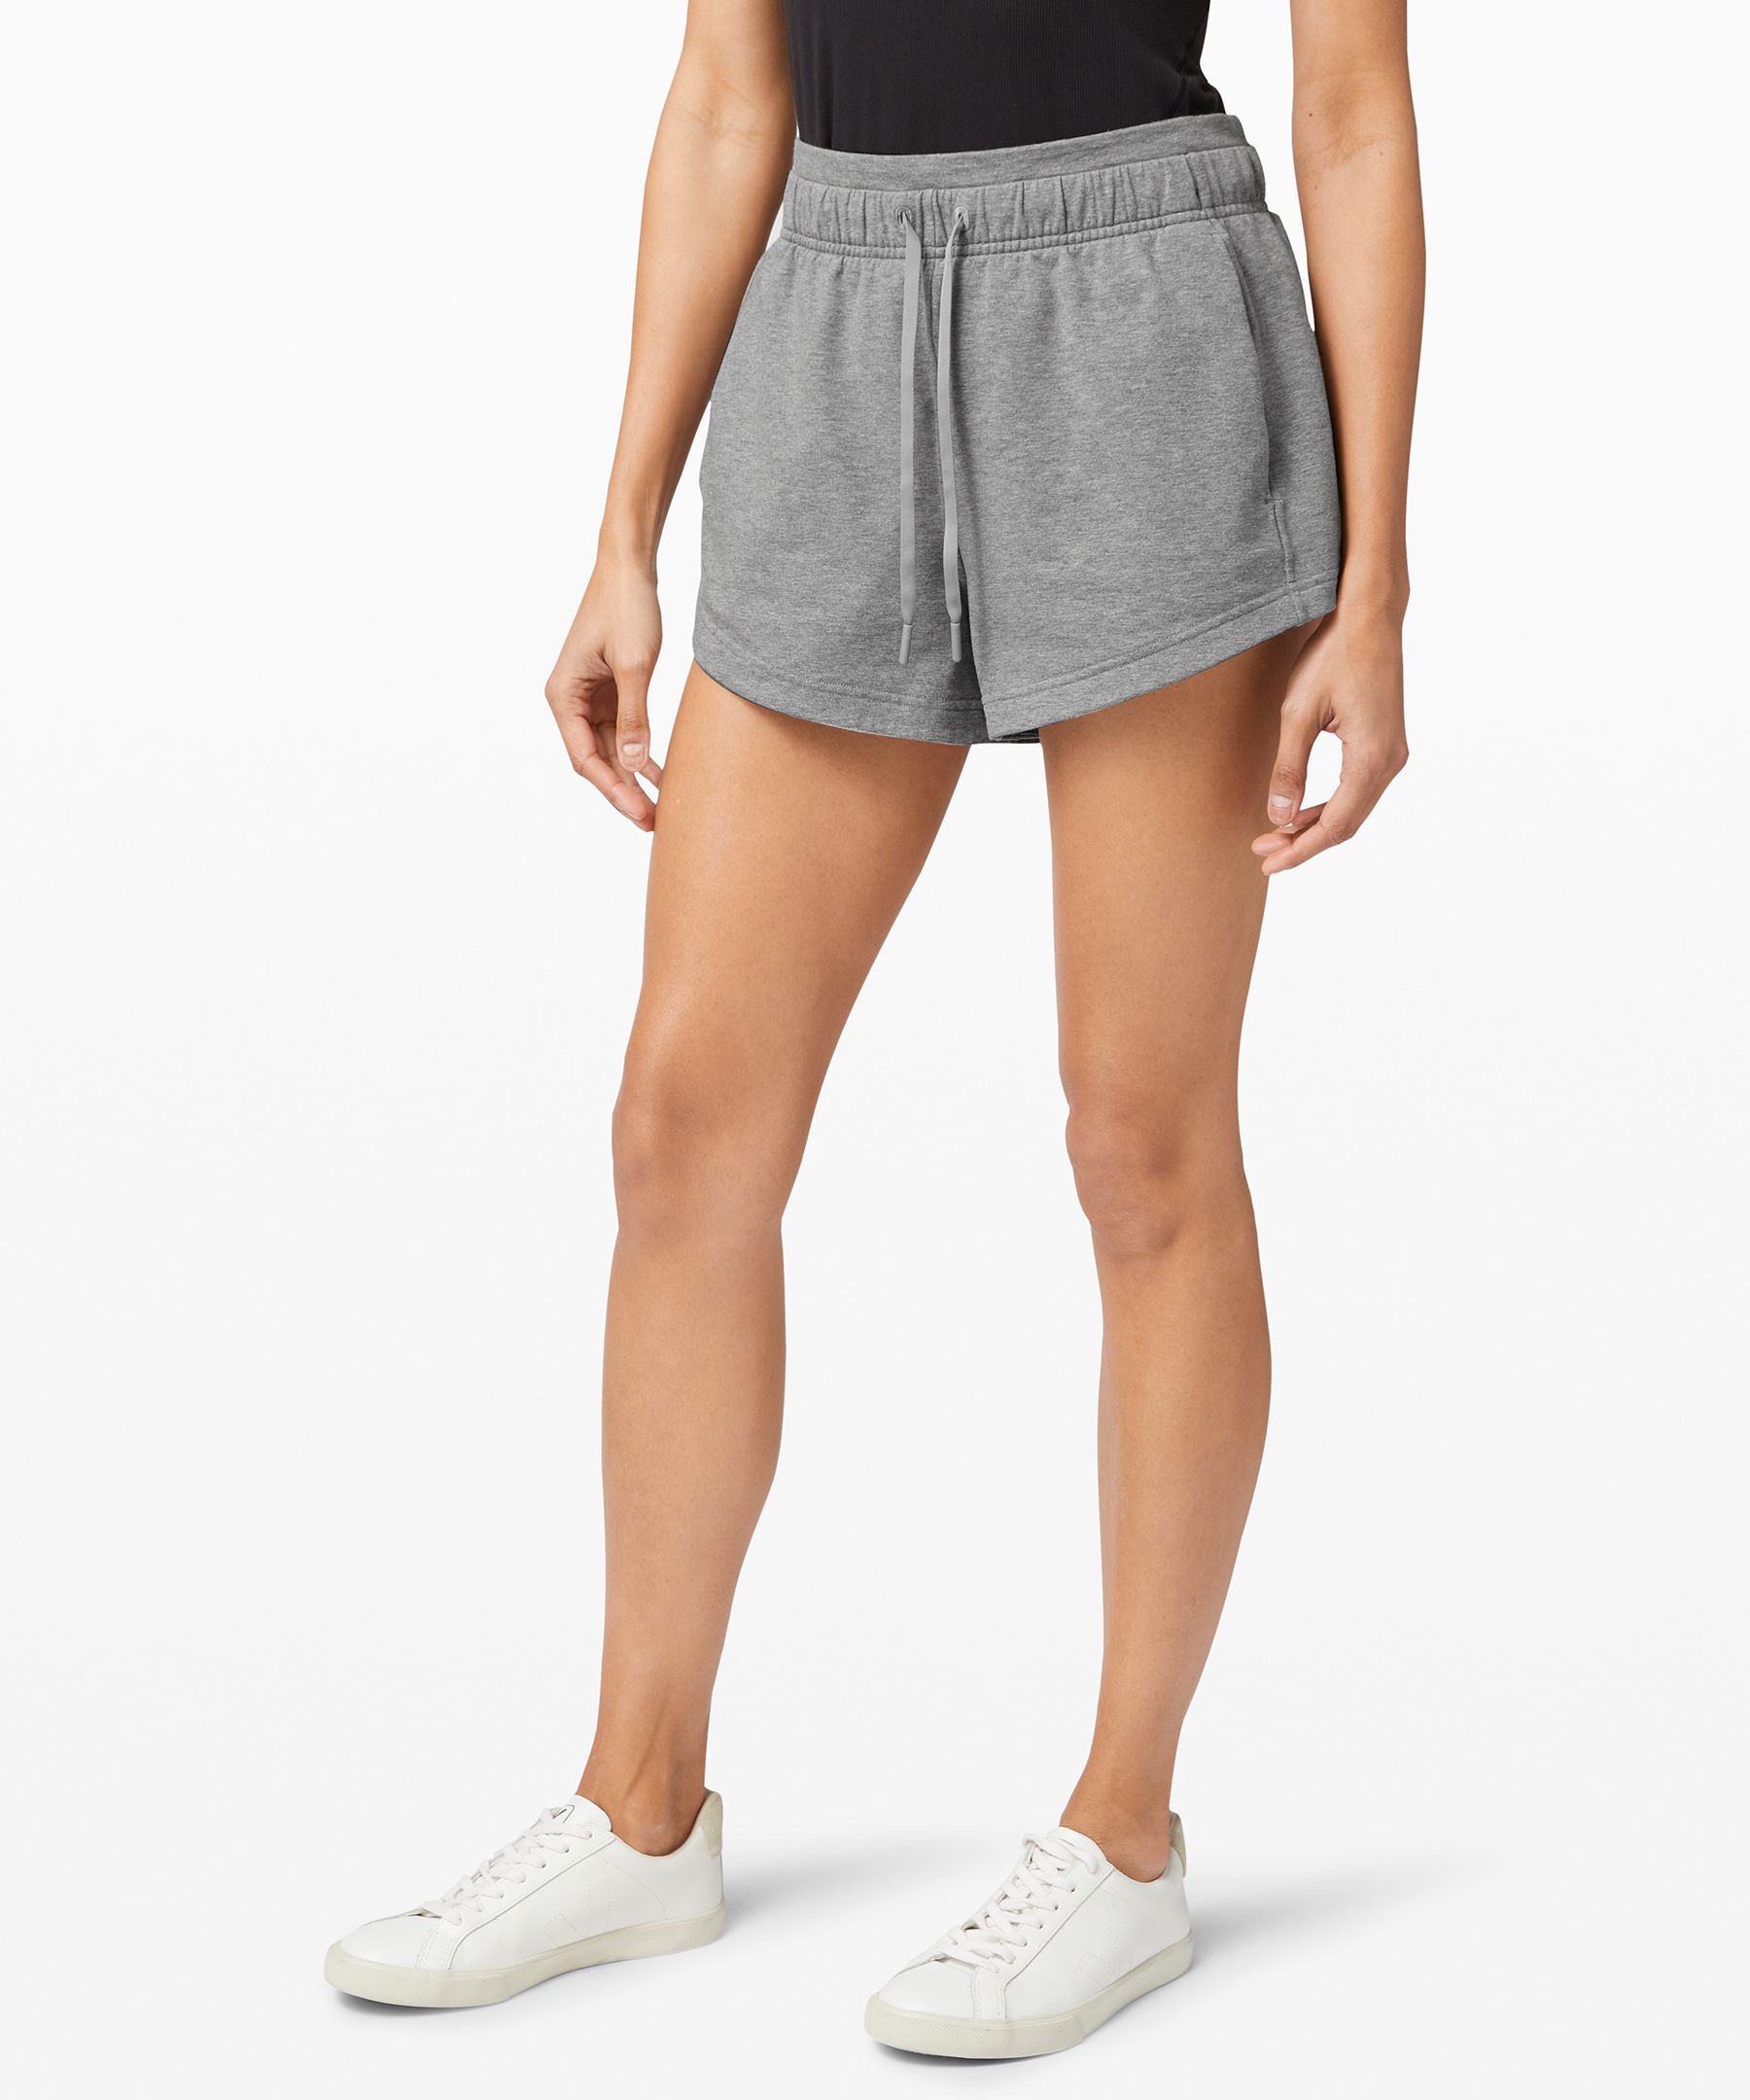 lululemon grey shorts